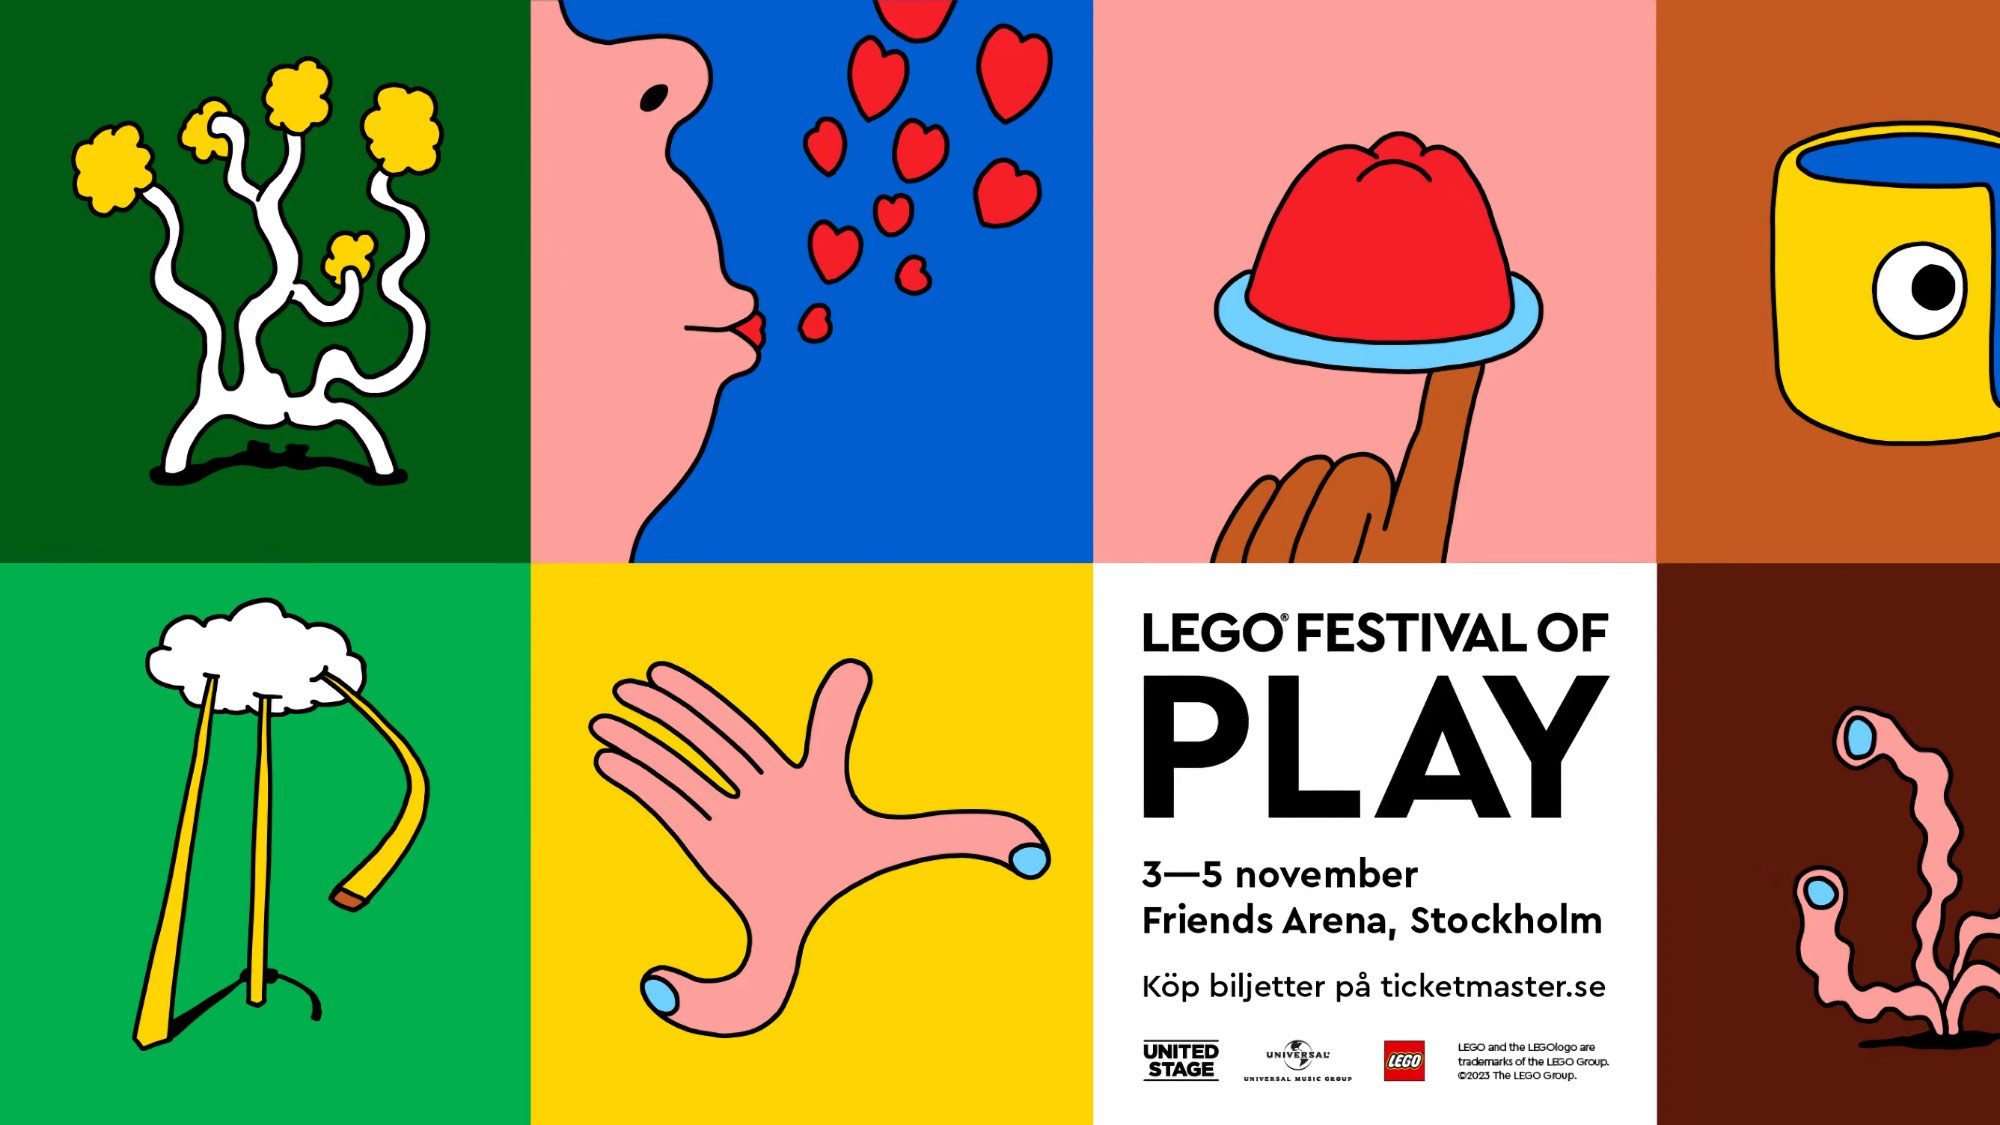 Legofestival kommer till Stockholm i höst. LEGO Festival of Play